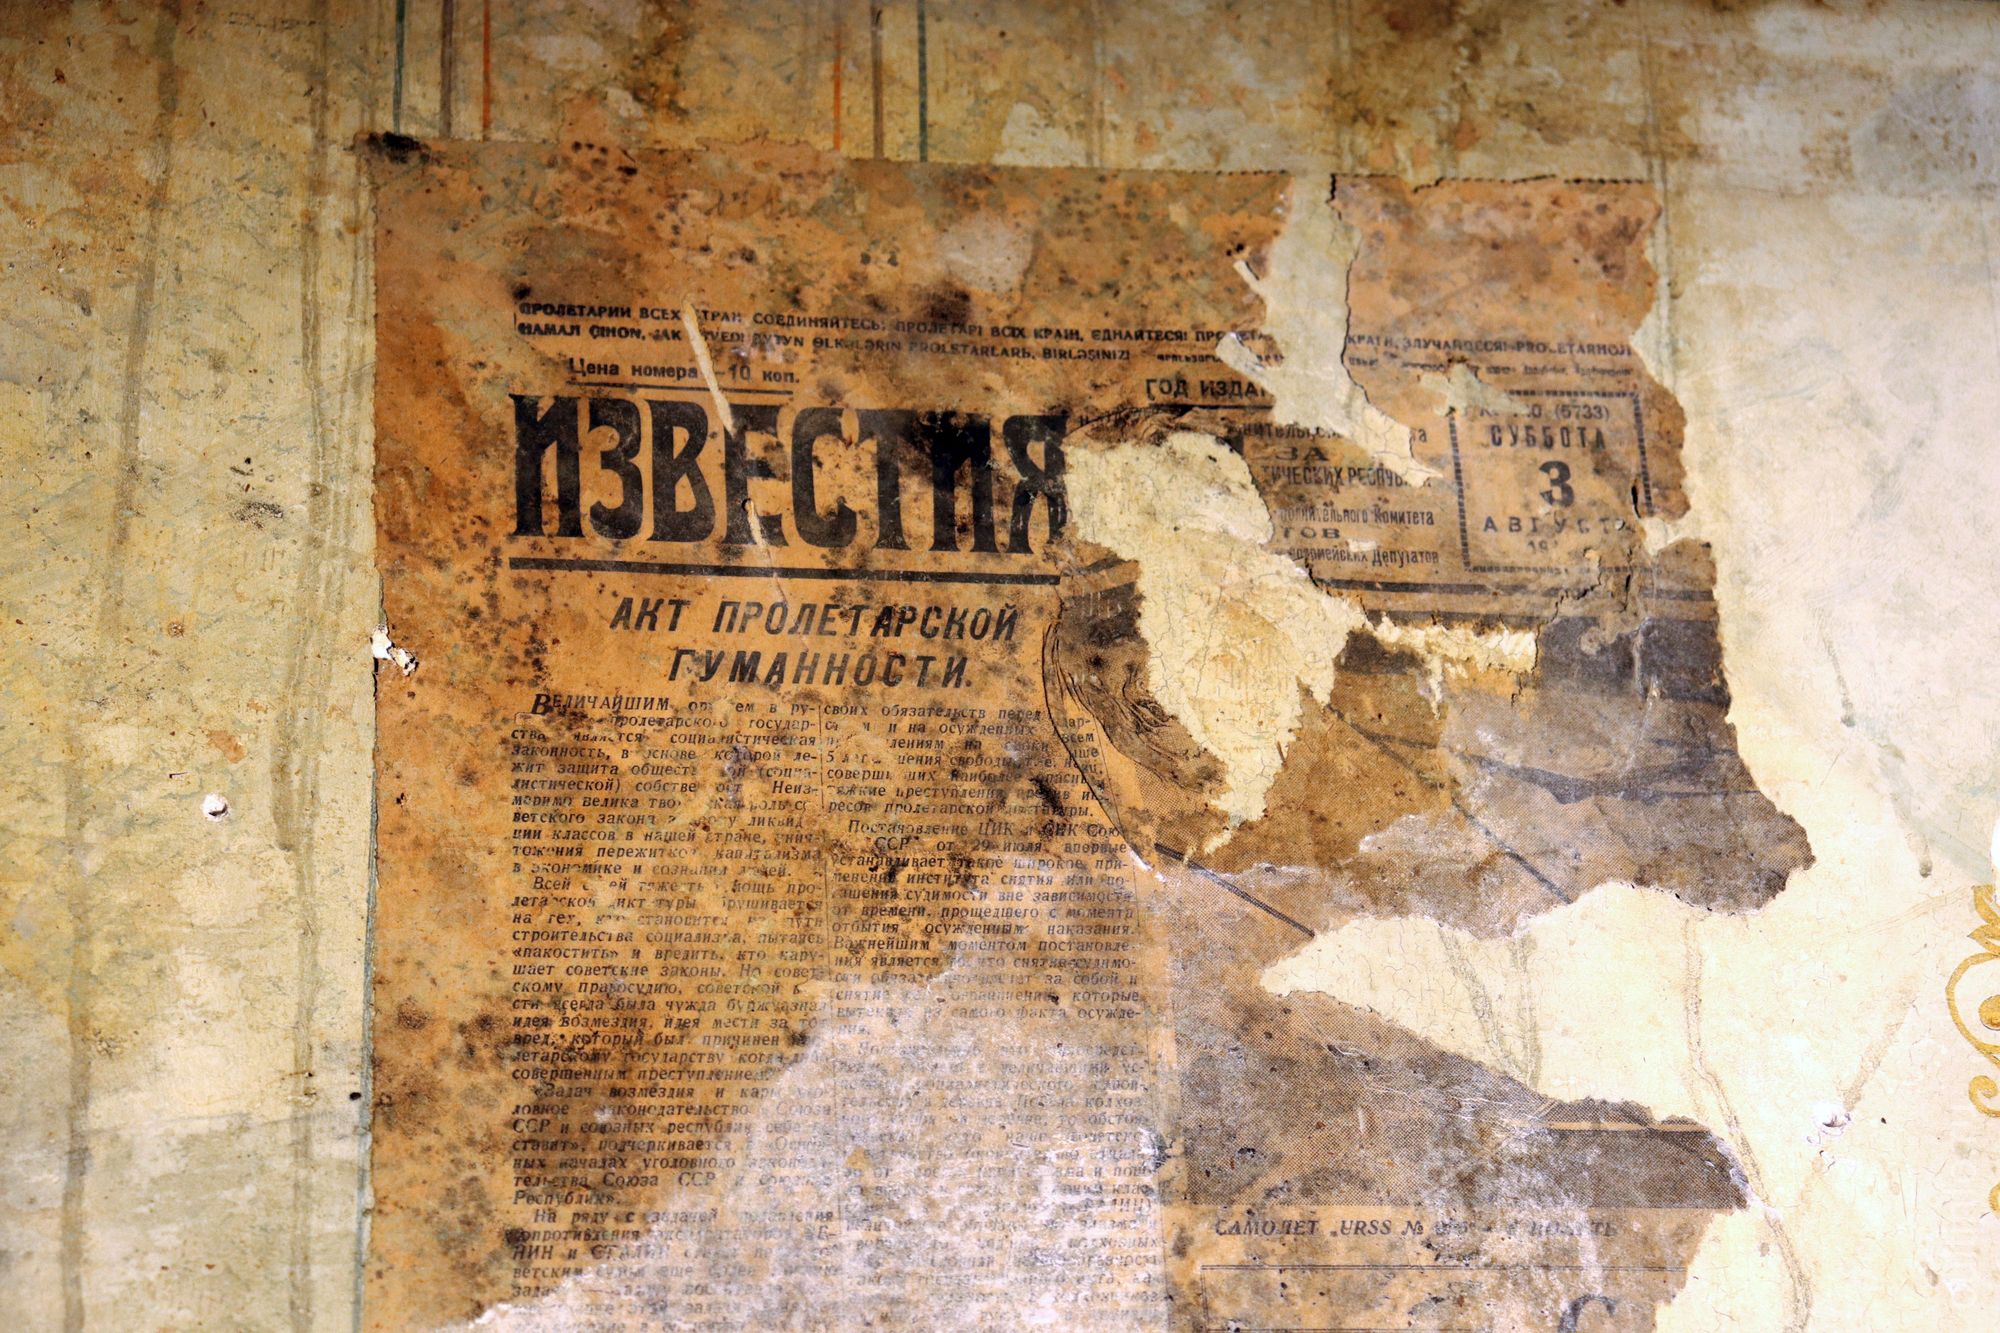 У реставраторов есть идея законсервировать участок, заклеенный газетами начала ХХ века, прямо на стене